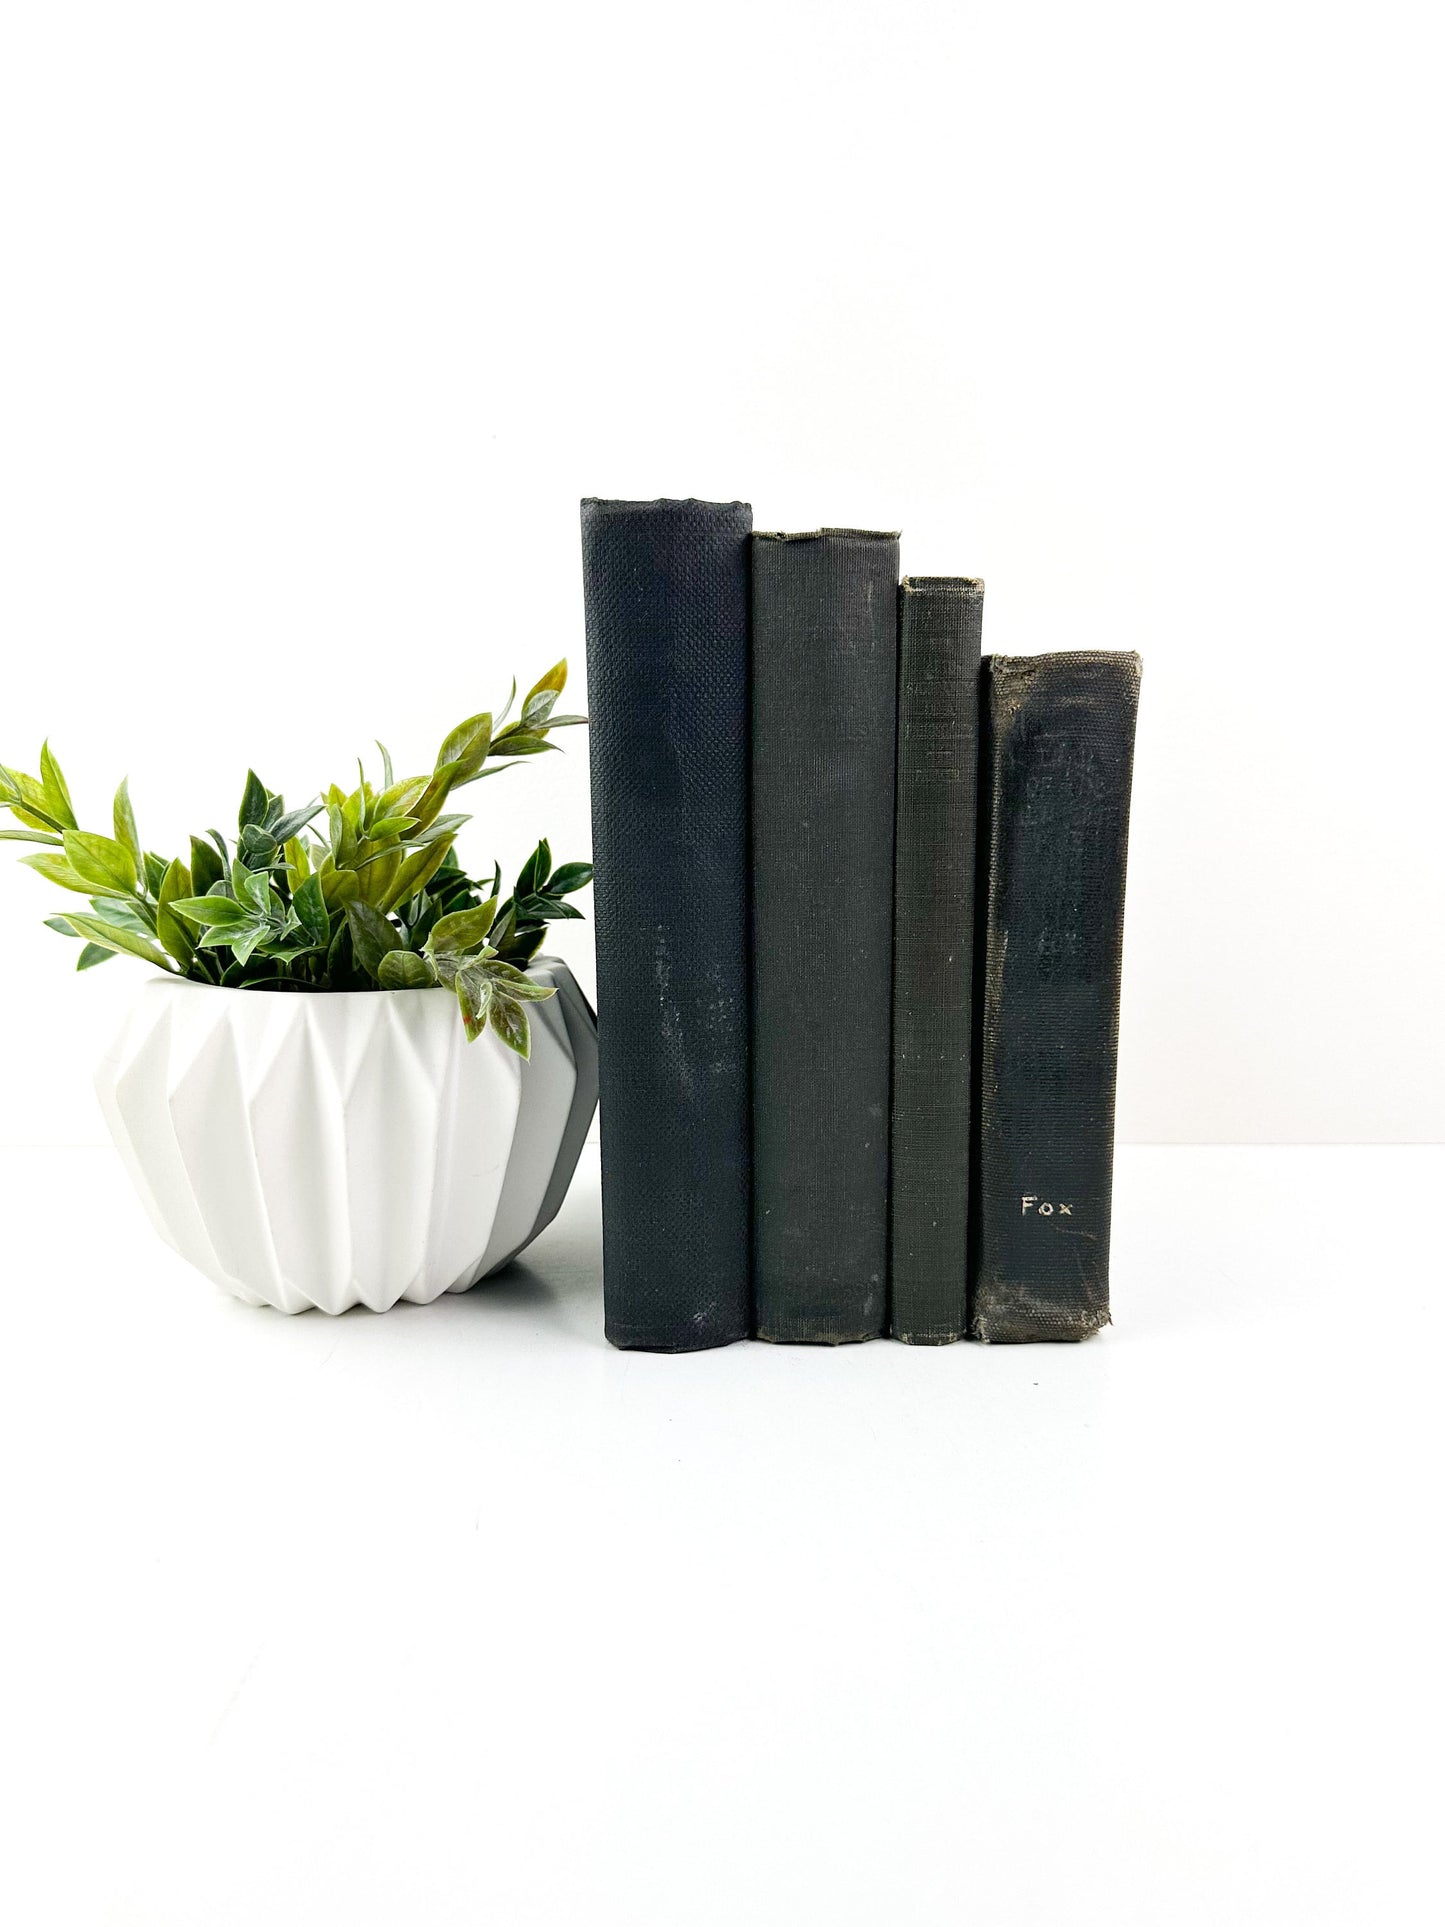 Black Book Set, Decorative Books for Shelf Decor, Modern Decor, Living Room Decor Ideas